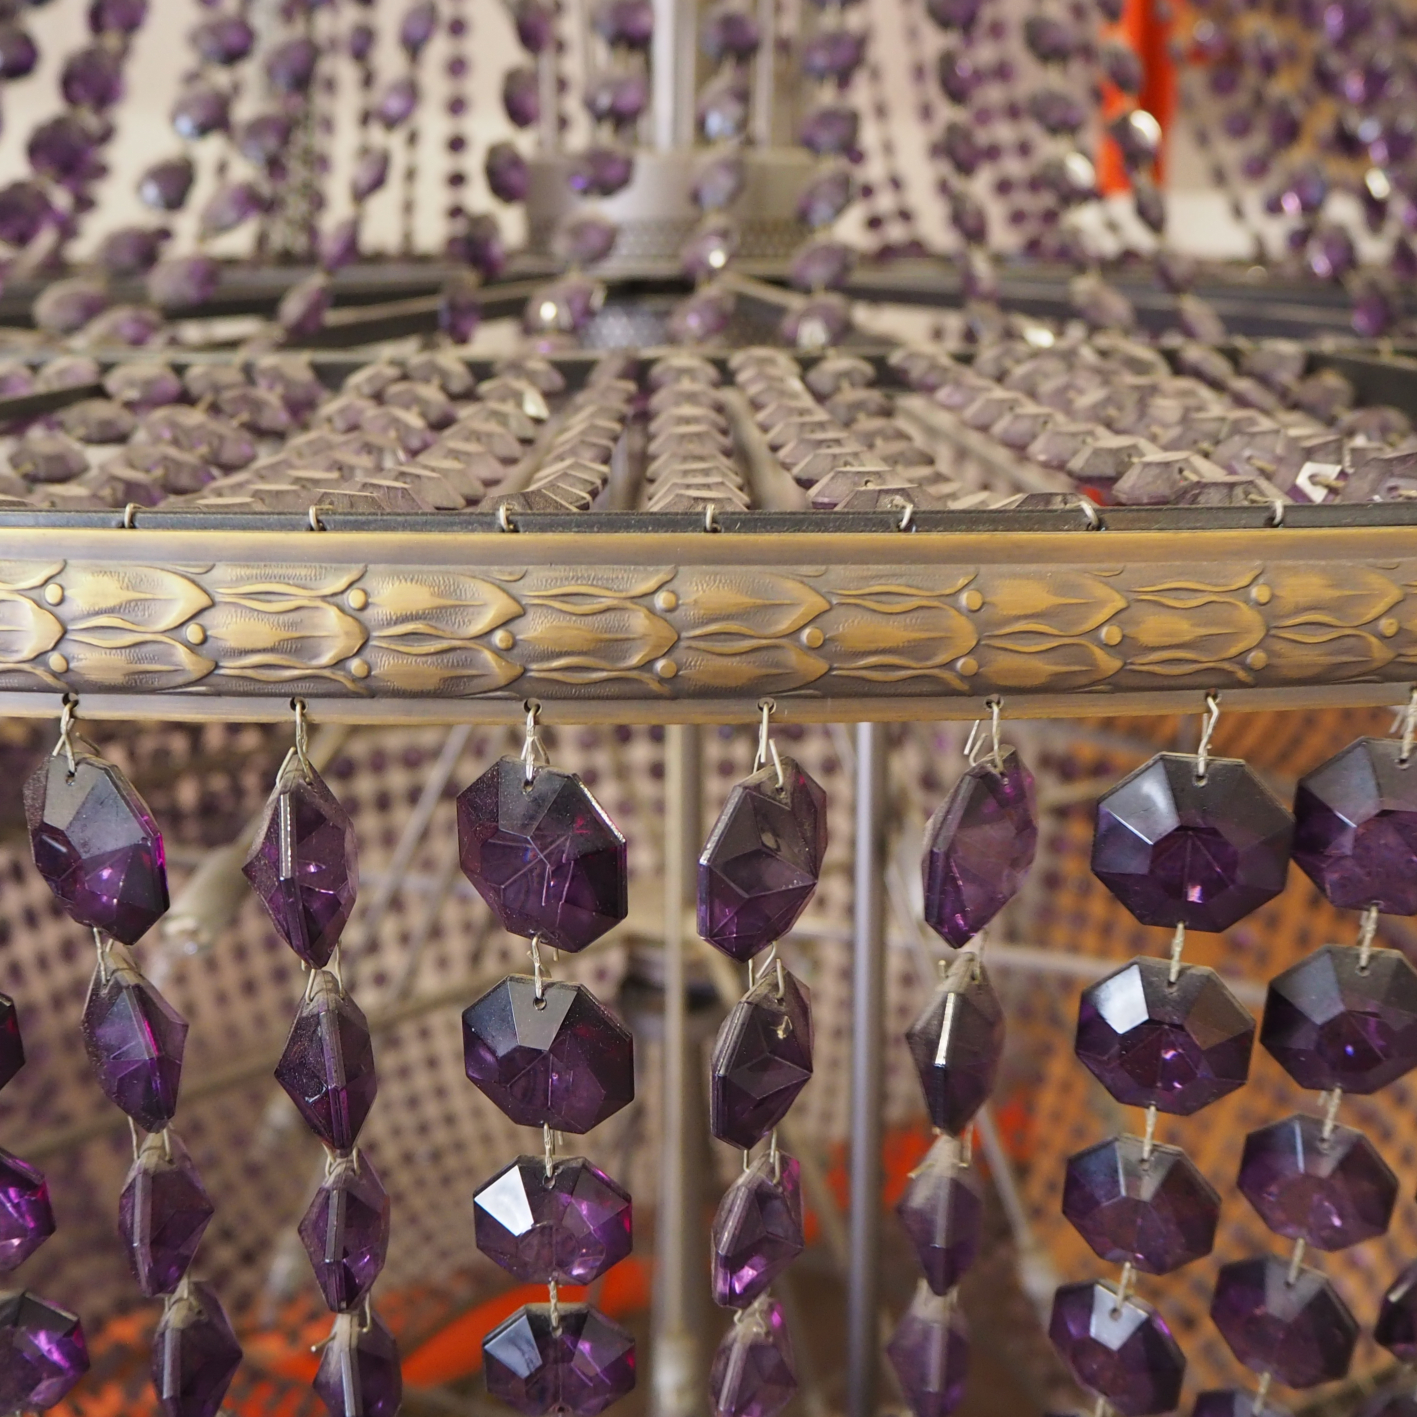 Majestic chandelier in Murano glass by Zonca Illuminazioni Voghera